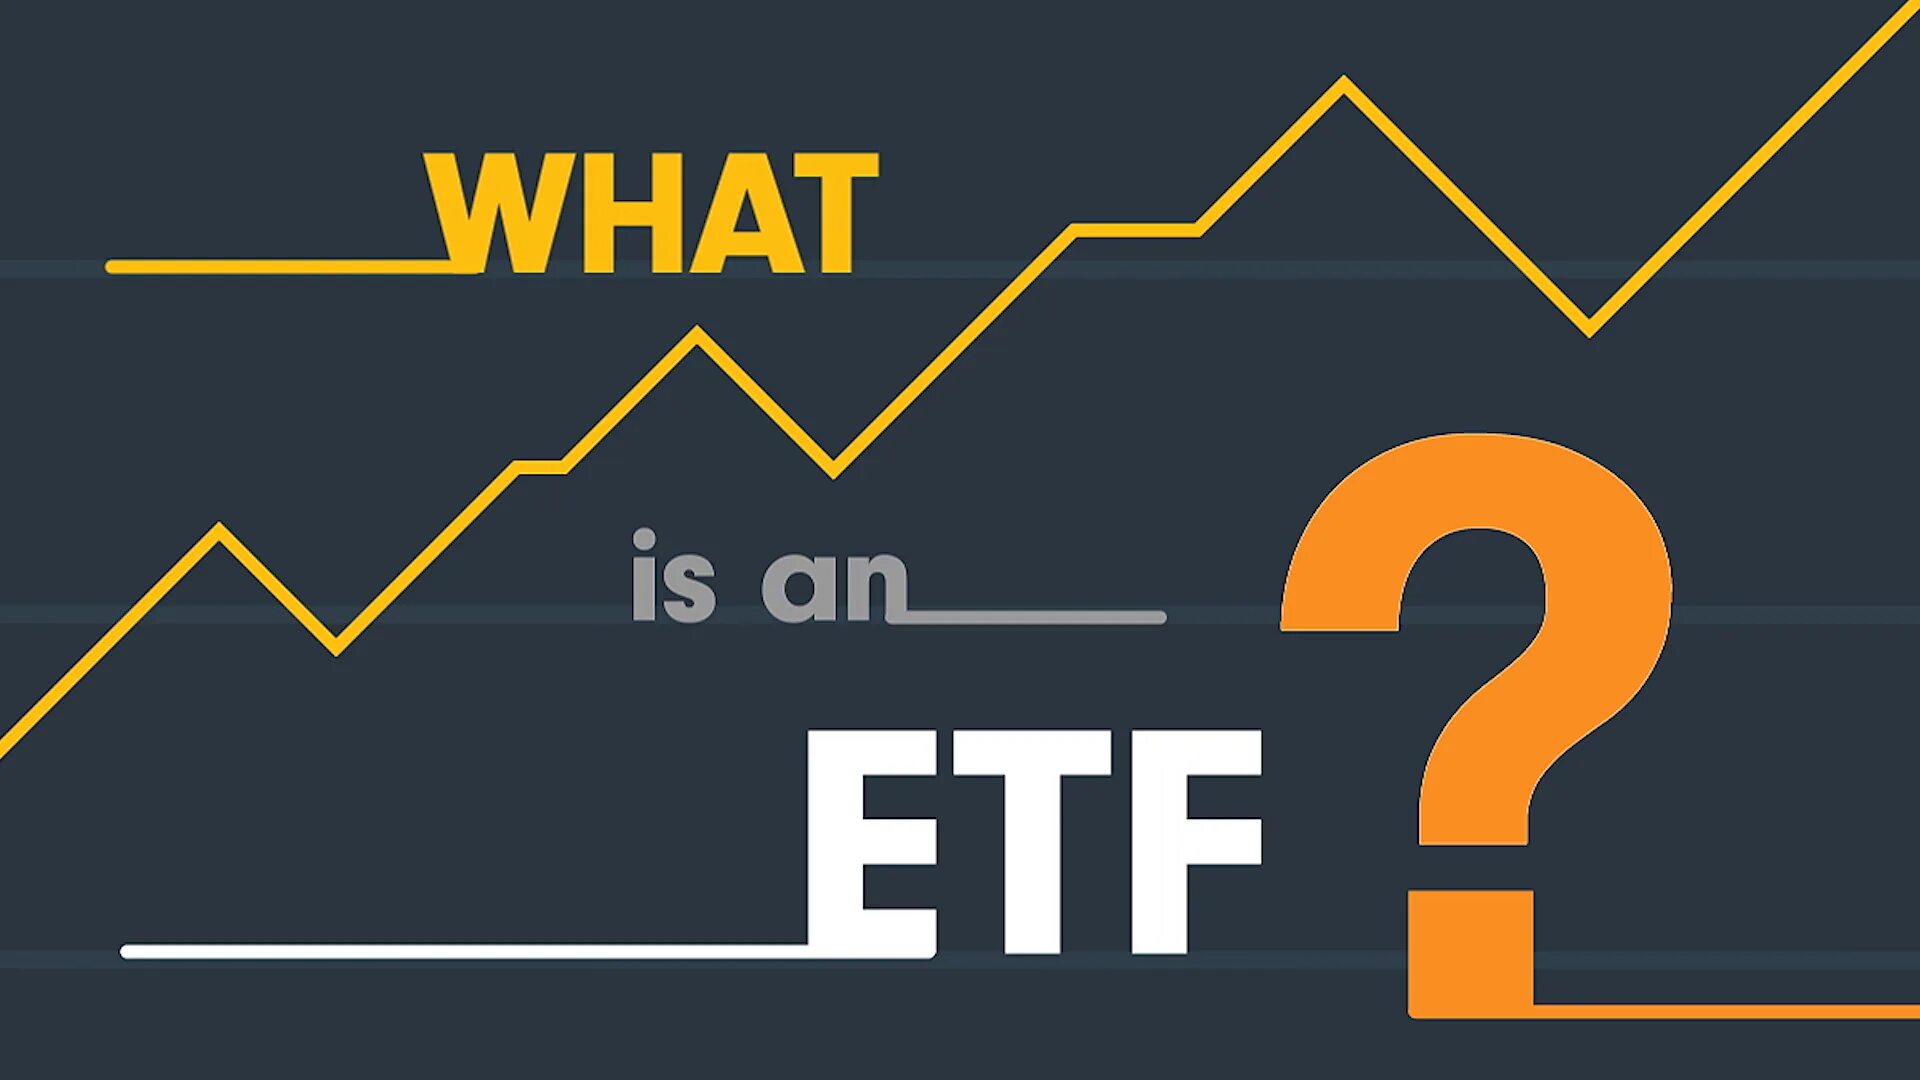 Etf бумаги. ETF фонды. ETF инвестиции. Биржевые фонды ETF. Инвестиции в ETF фонды.